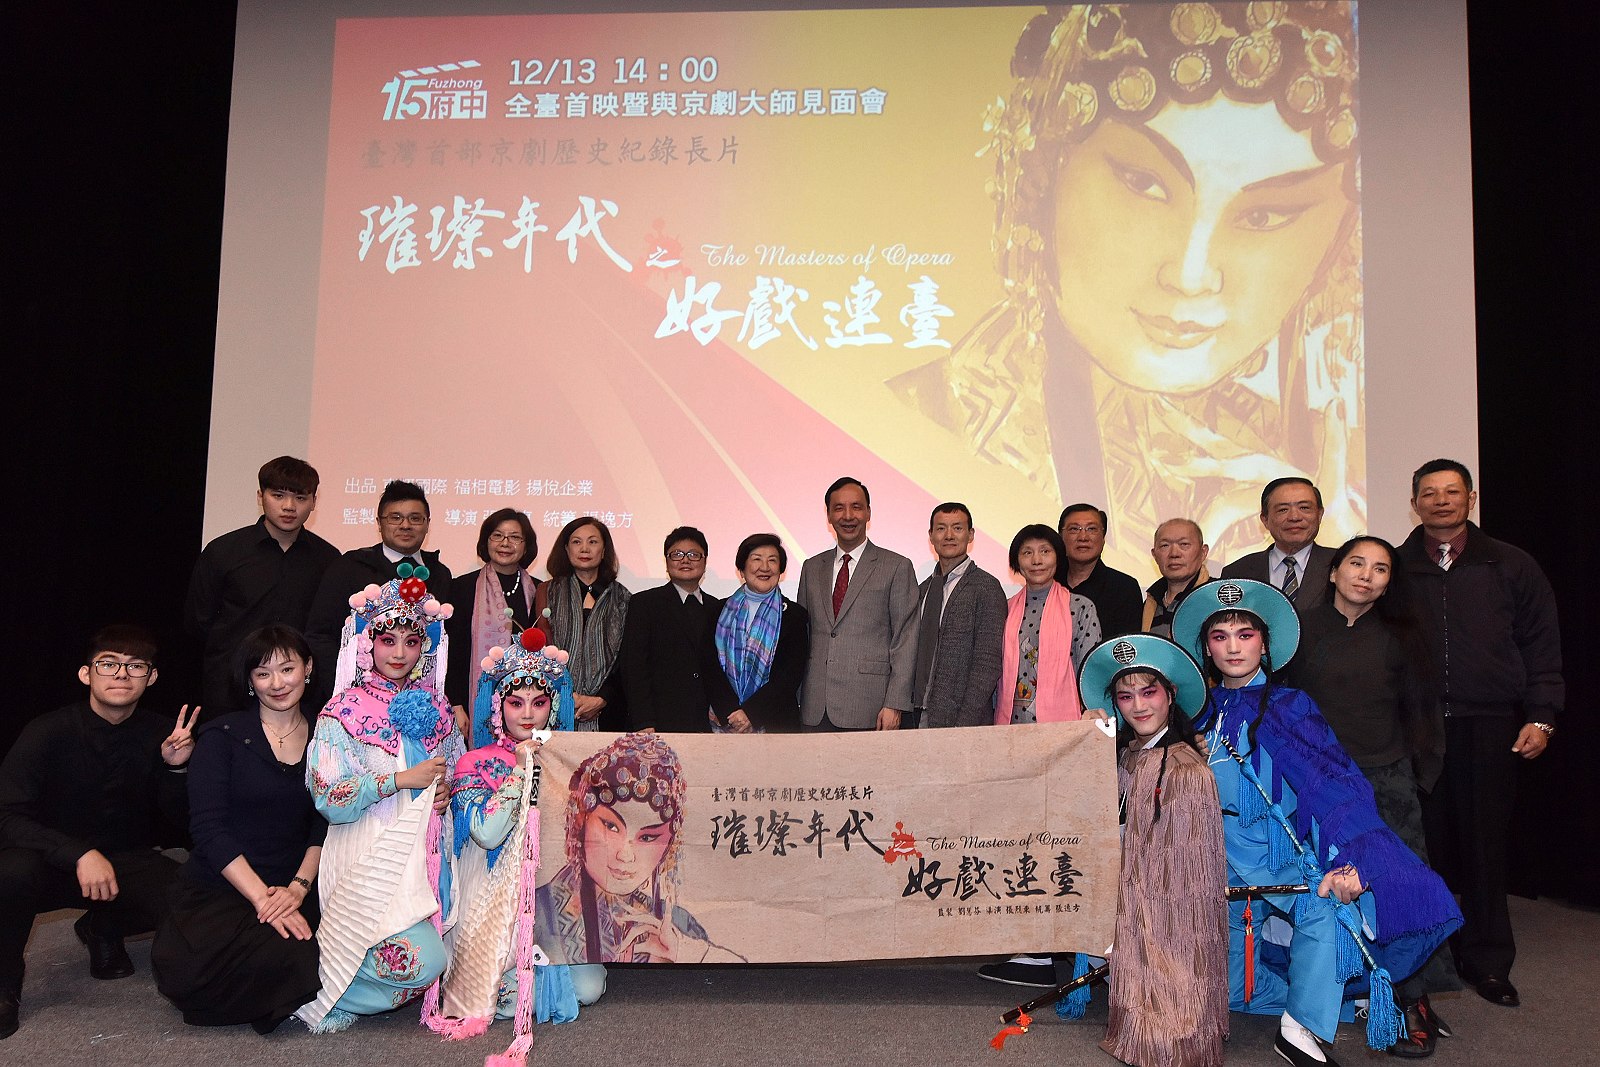 感謝戲曲大師們在傳統藝術上的成就與貢獻，提供臺灣戲曲發展豐沛的養分，串聯起臺灣京劇的璀璨年代。